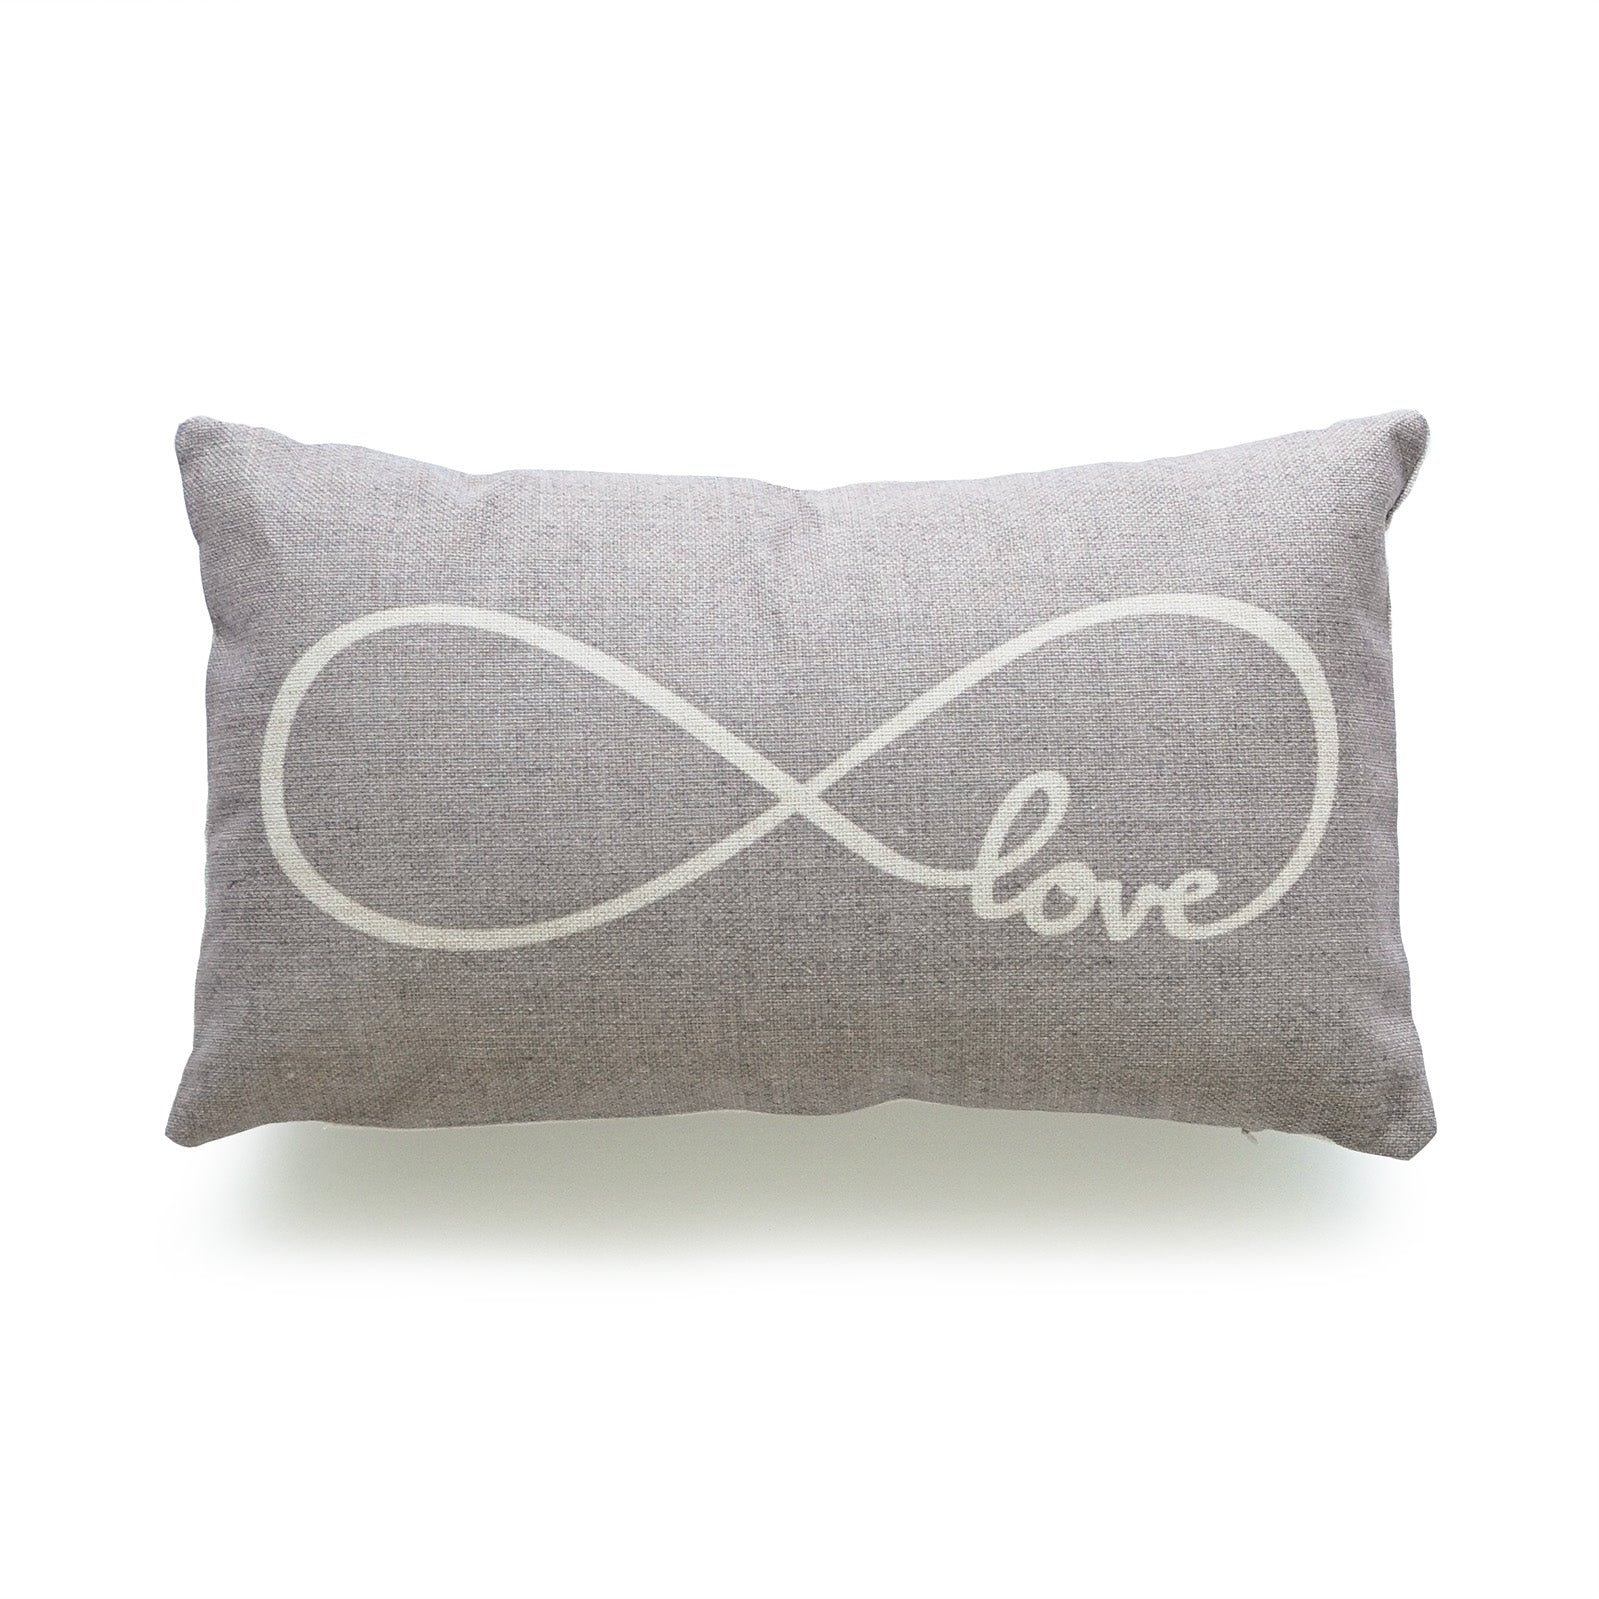 Rustic Infinite Love Lumbar Pillow Cover, Gray, 12"x20"